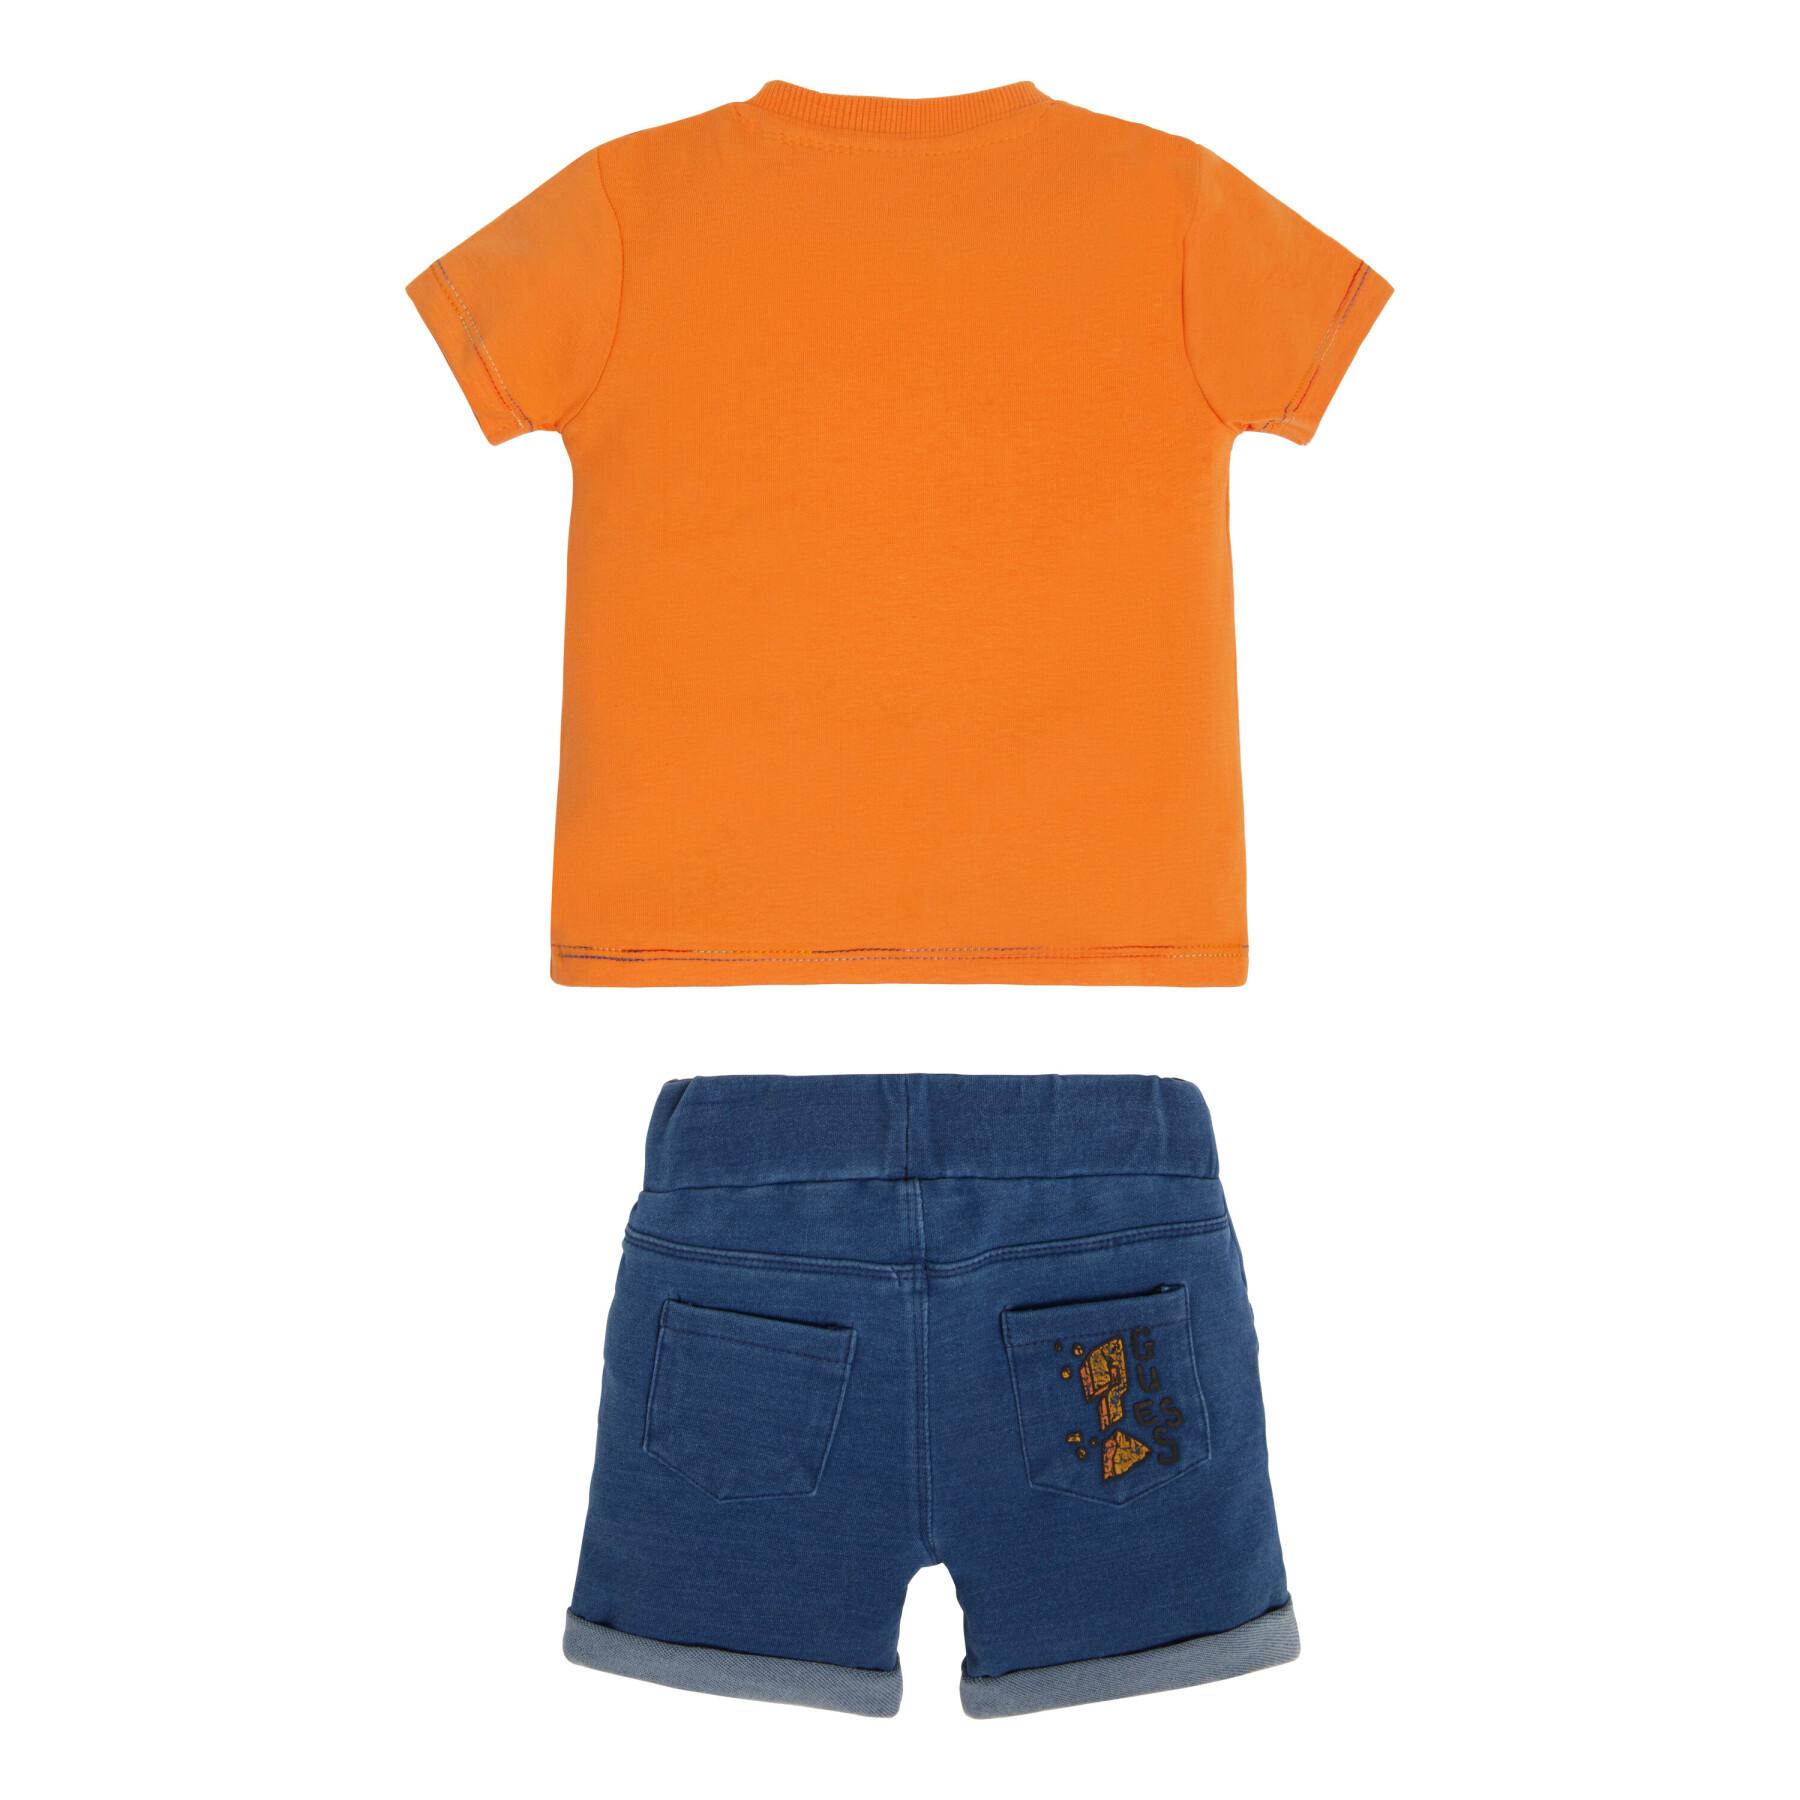 T-shirt + shorts för babypojke Guess